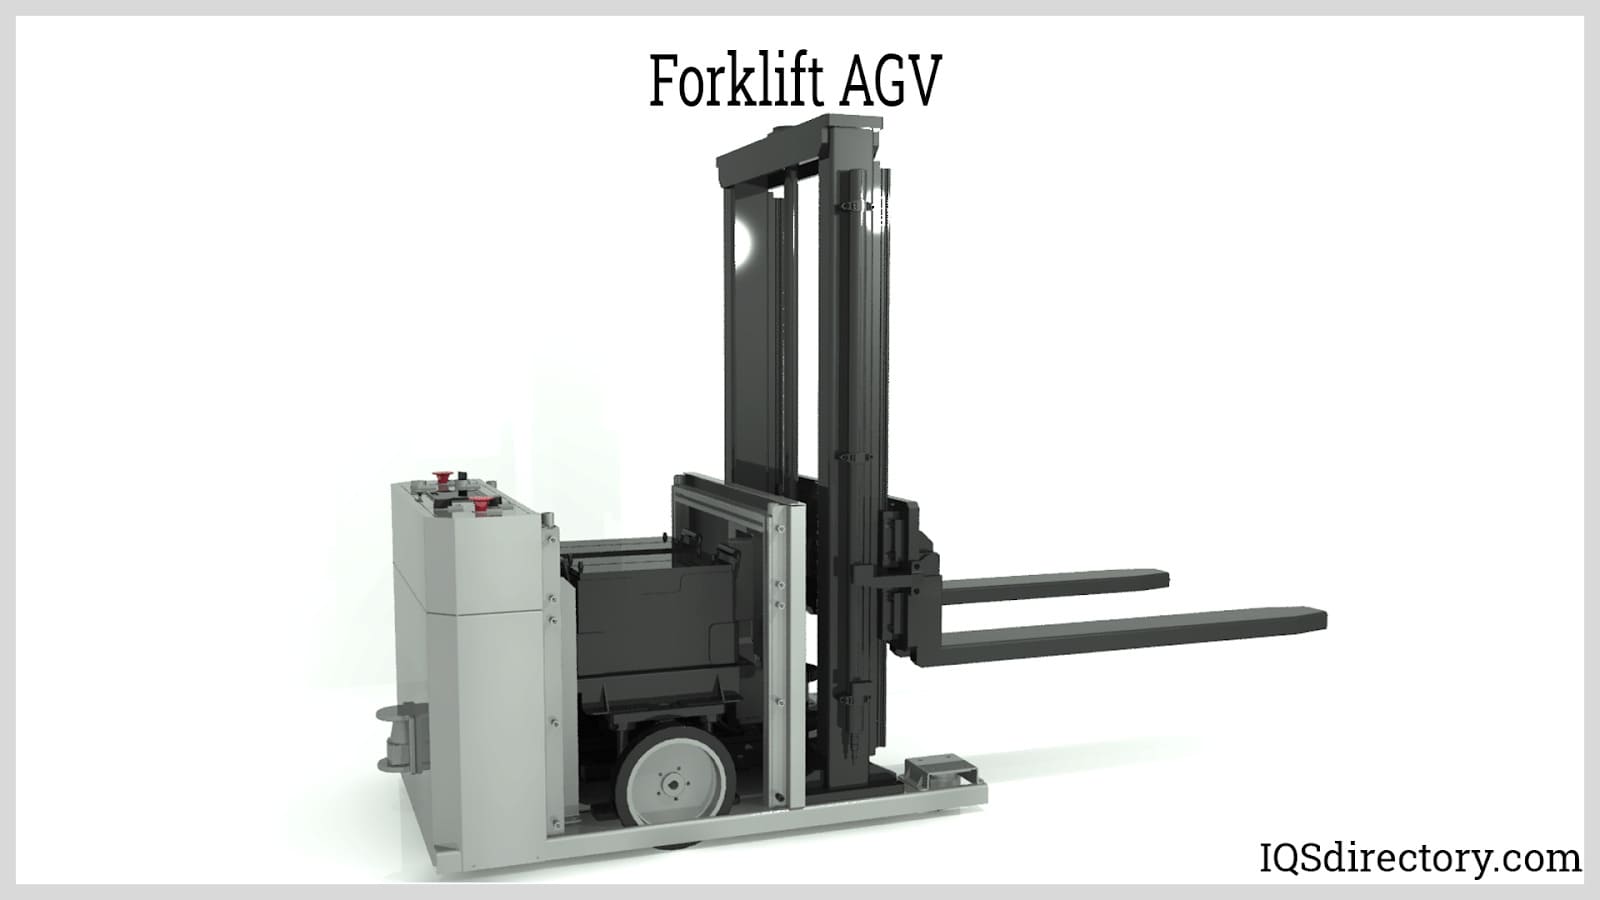 Forklift AGV